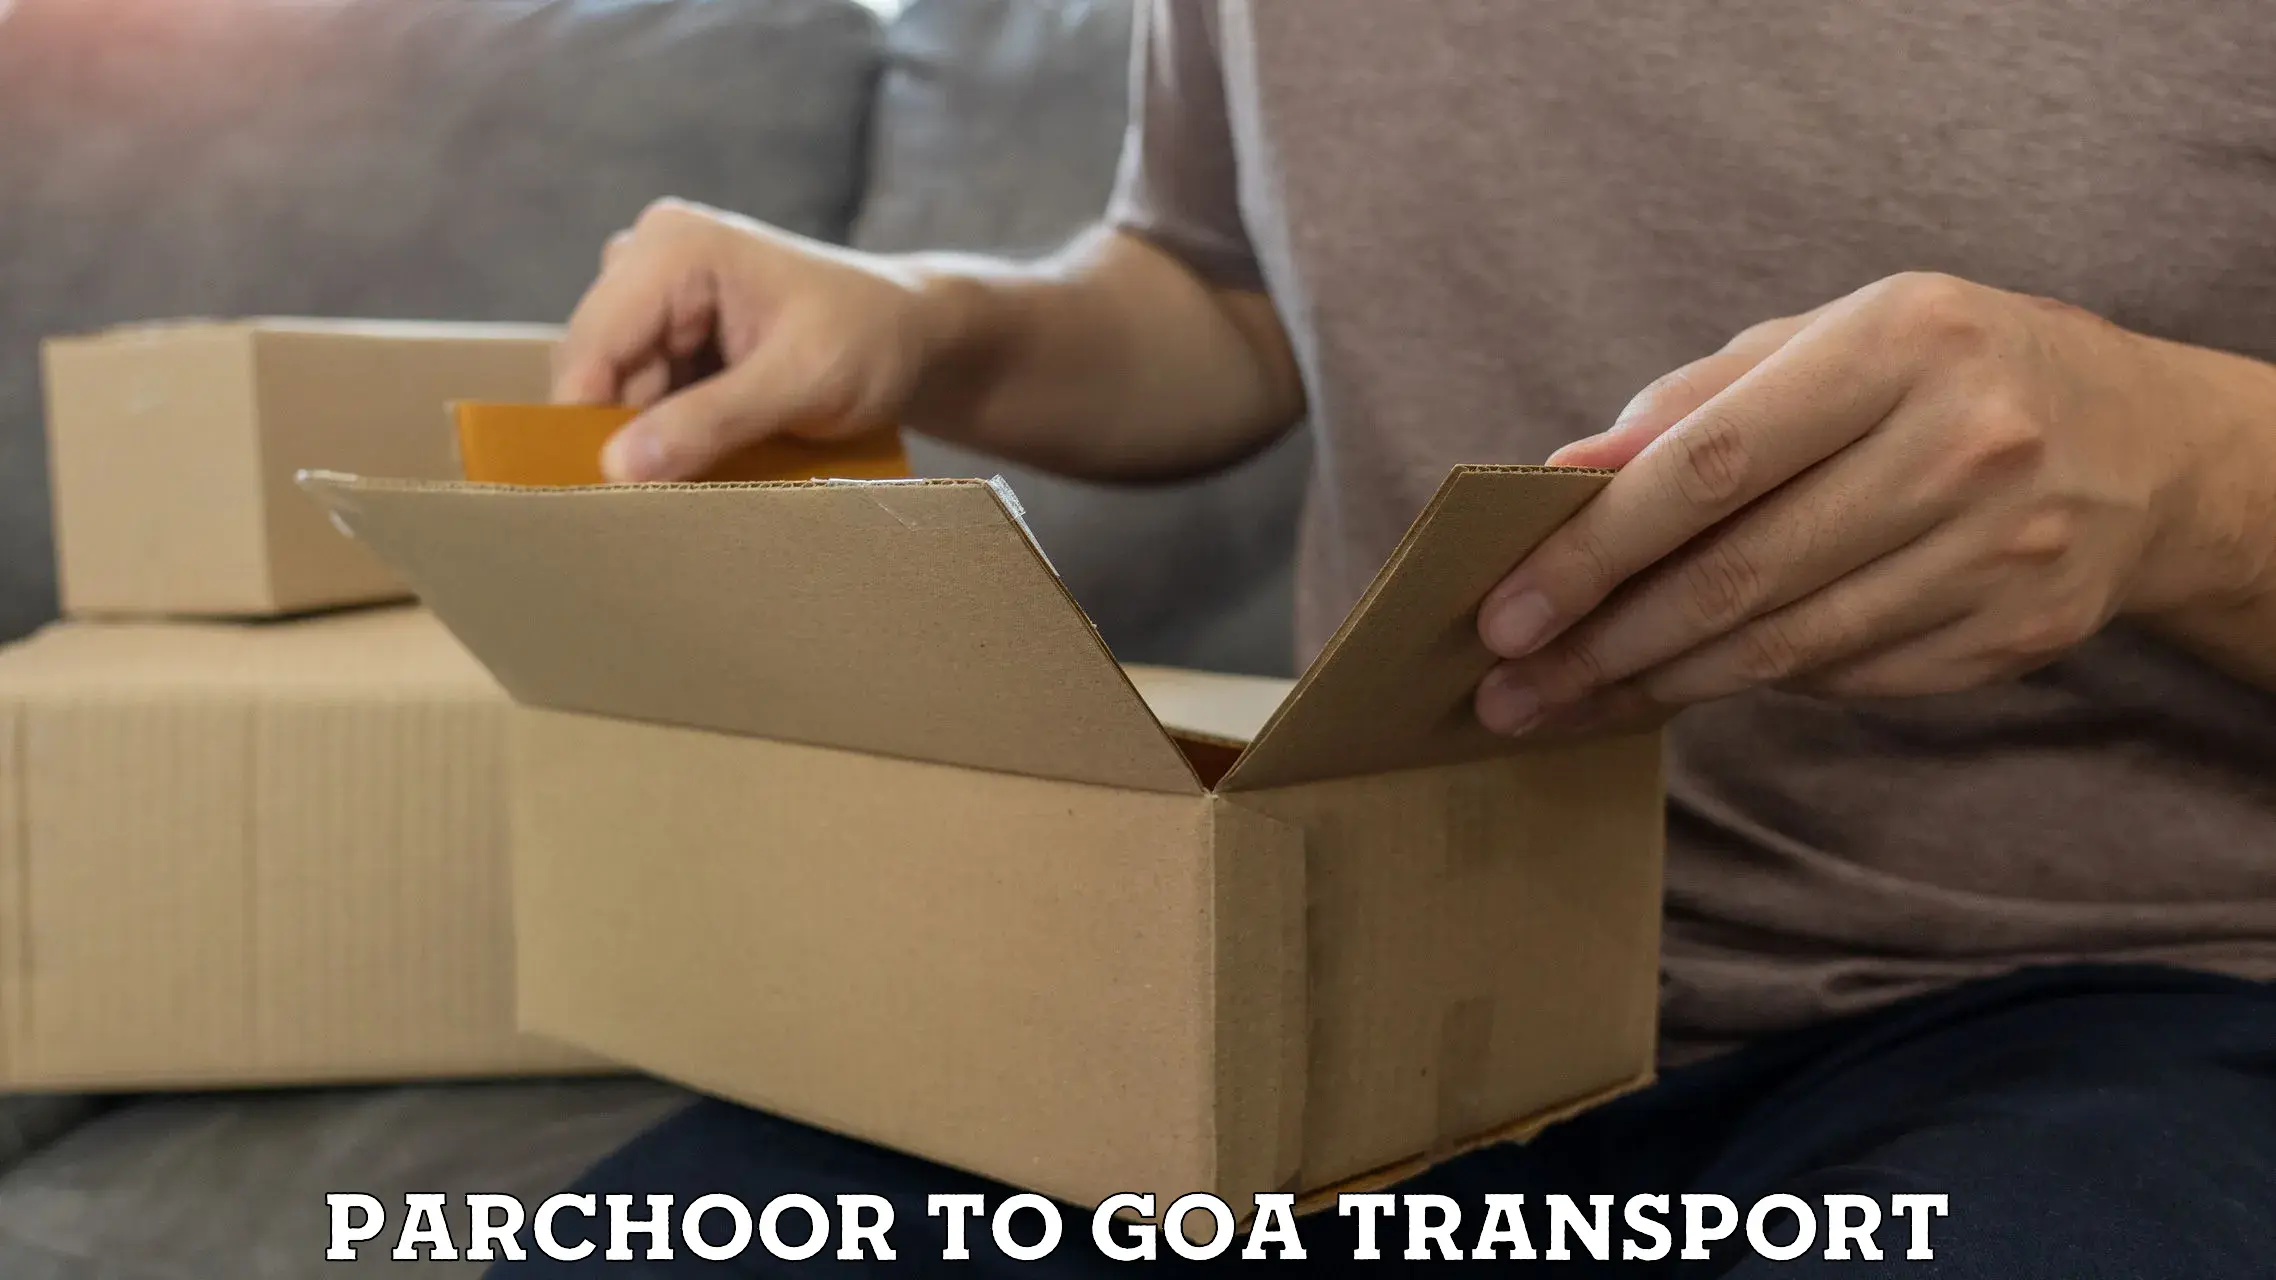 Commercial transport service Parchoor to Goa University